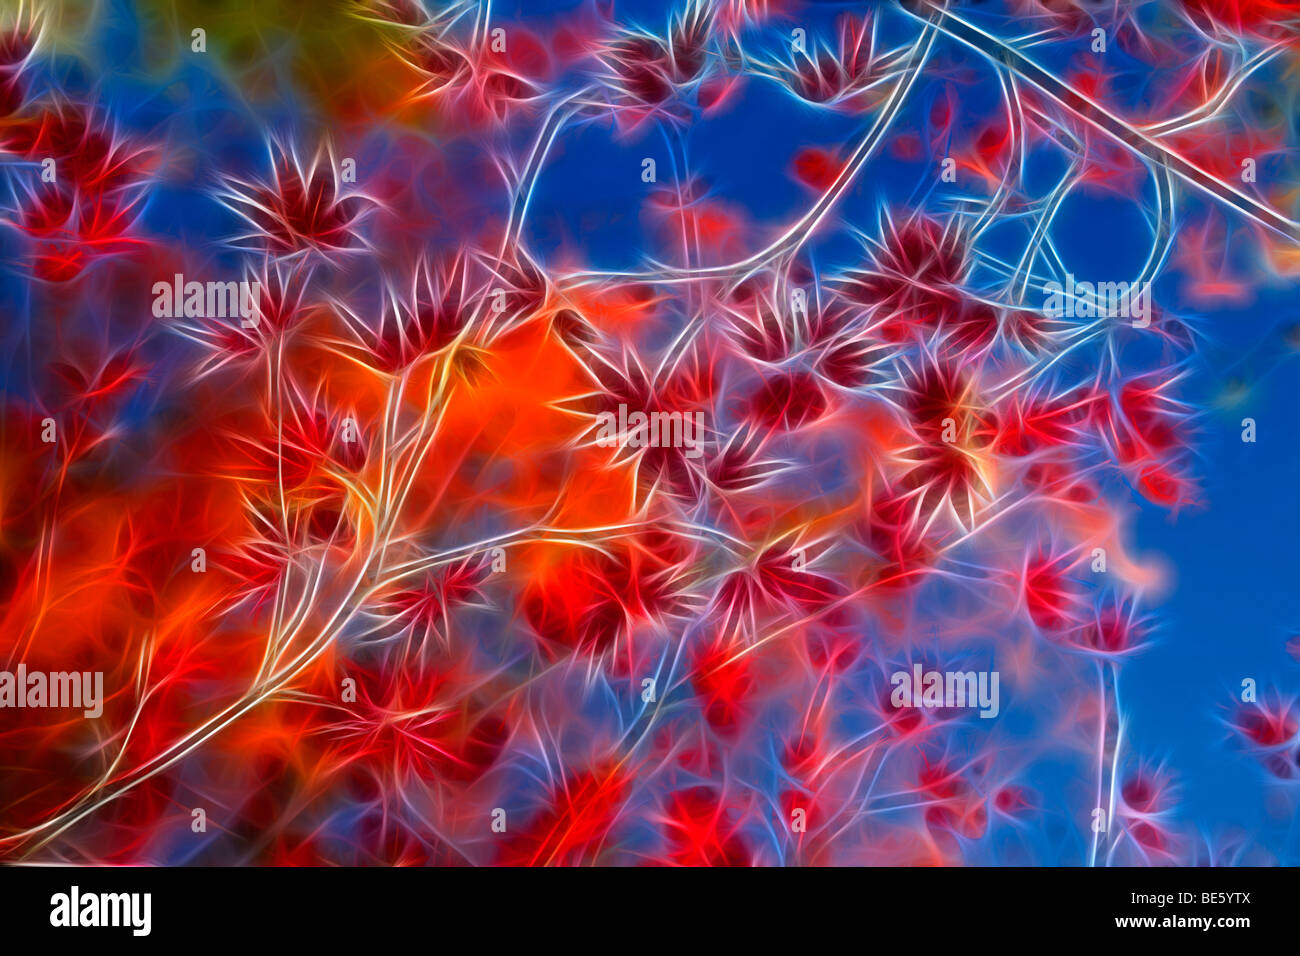 La direction générale de l'érable (Acer palmatum) en automne. Illustration numérique. Dessin assisté par ordinateur d'une branche d'érable palmé. Banque D'Images